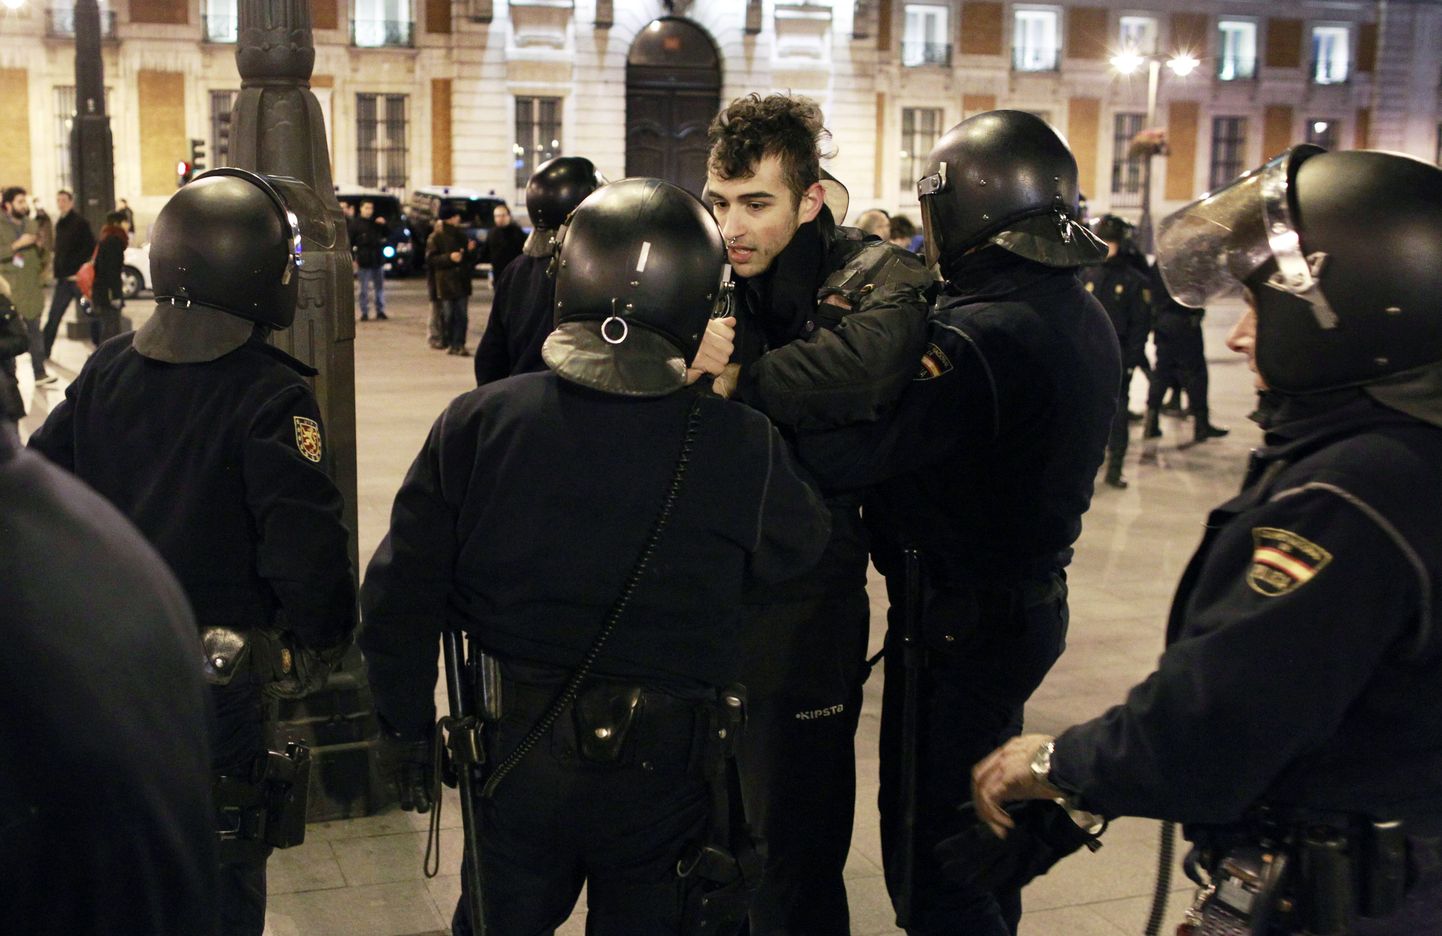 Hispaania mäsulipolitsei ajas 2. veebruari hilisõhtul laiali meeleavalduse Madridis.